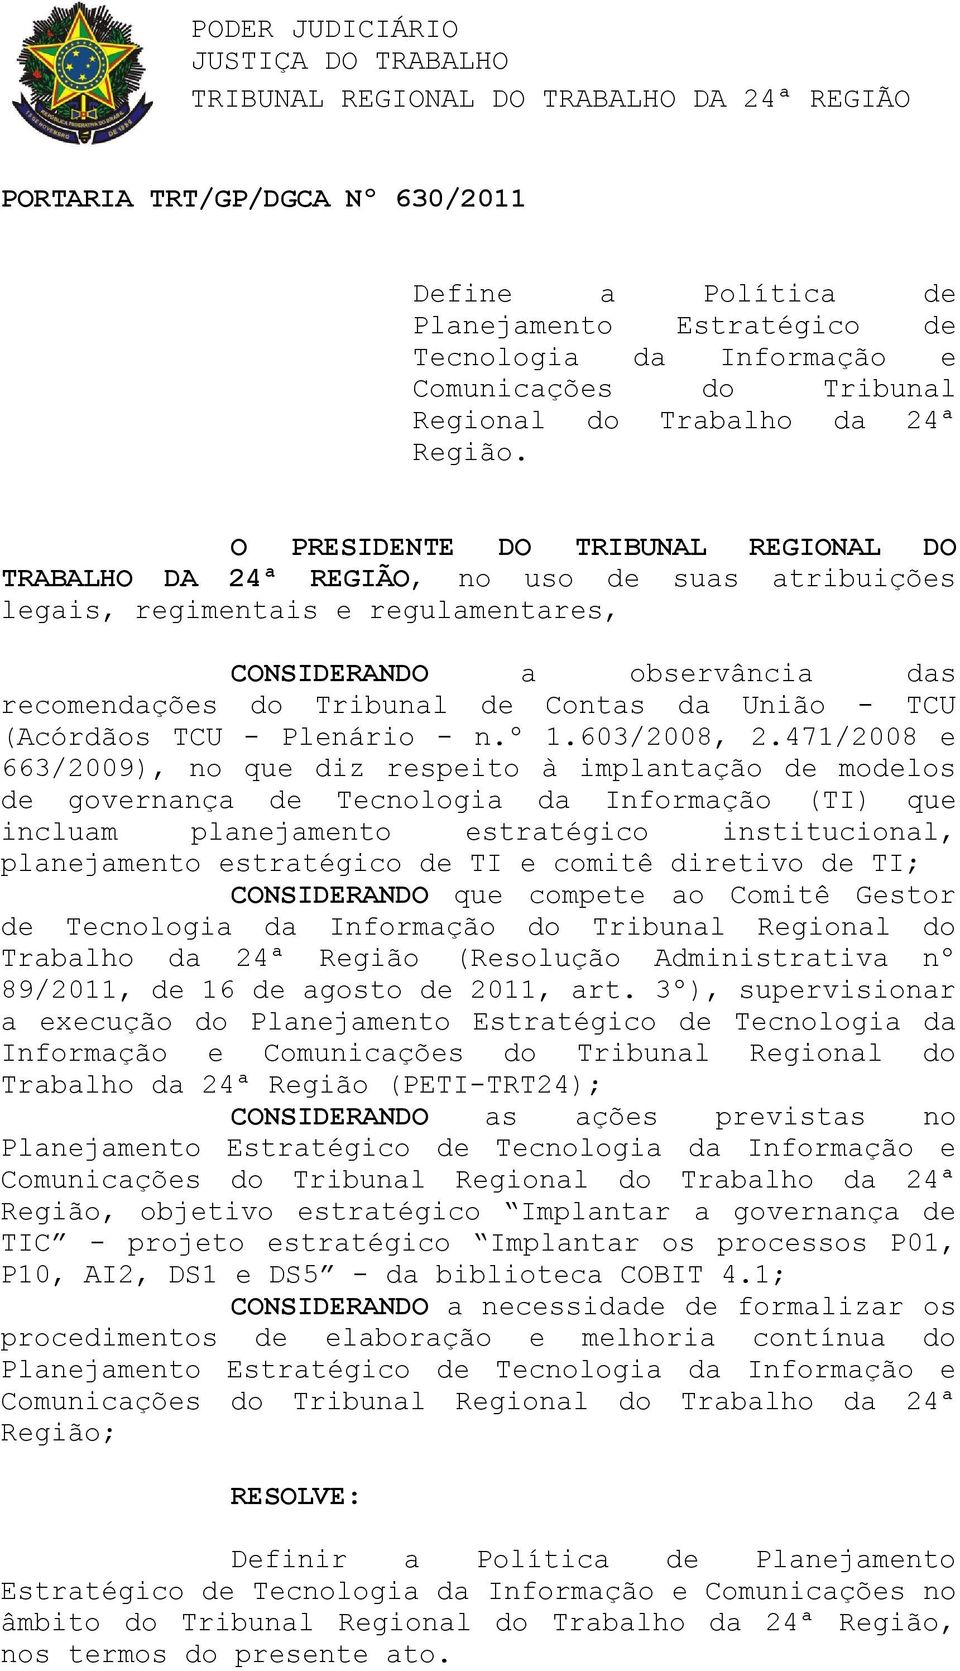 O PRESIDENTE DO TRIBUNAL REGIONAL DO TRABALHO DA 24ª REGIÃO, no uso de suas atribuições legais, regimentais e regulamentares, CONSIDERANDO a observância das recomendações do Tribunal de Contas da